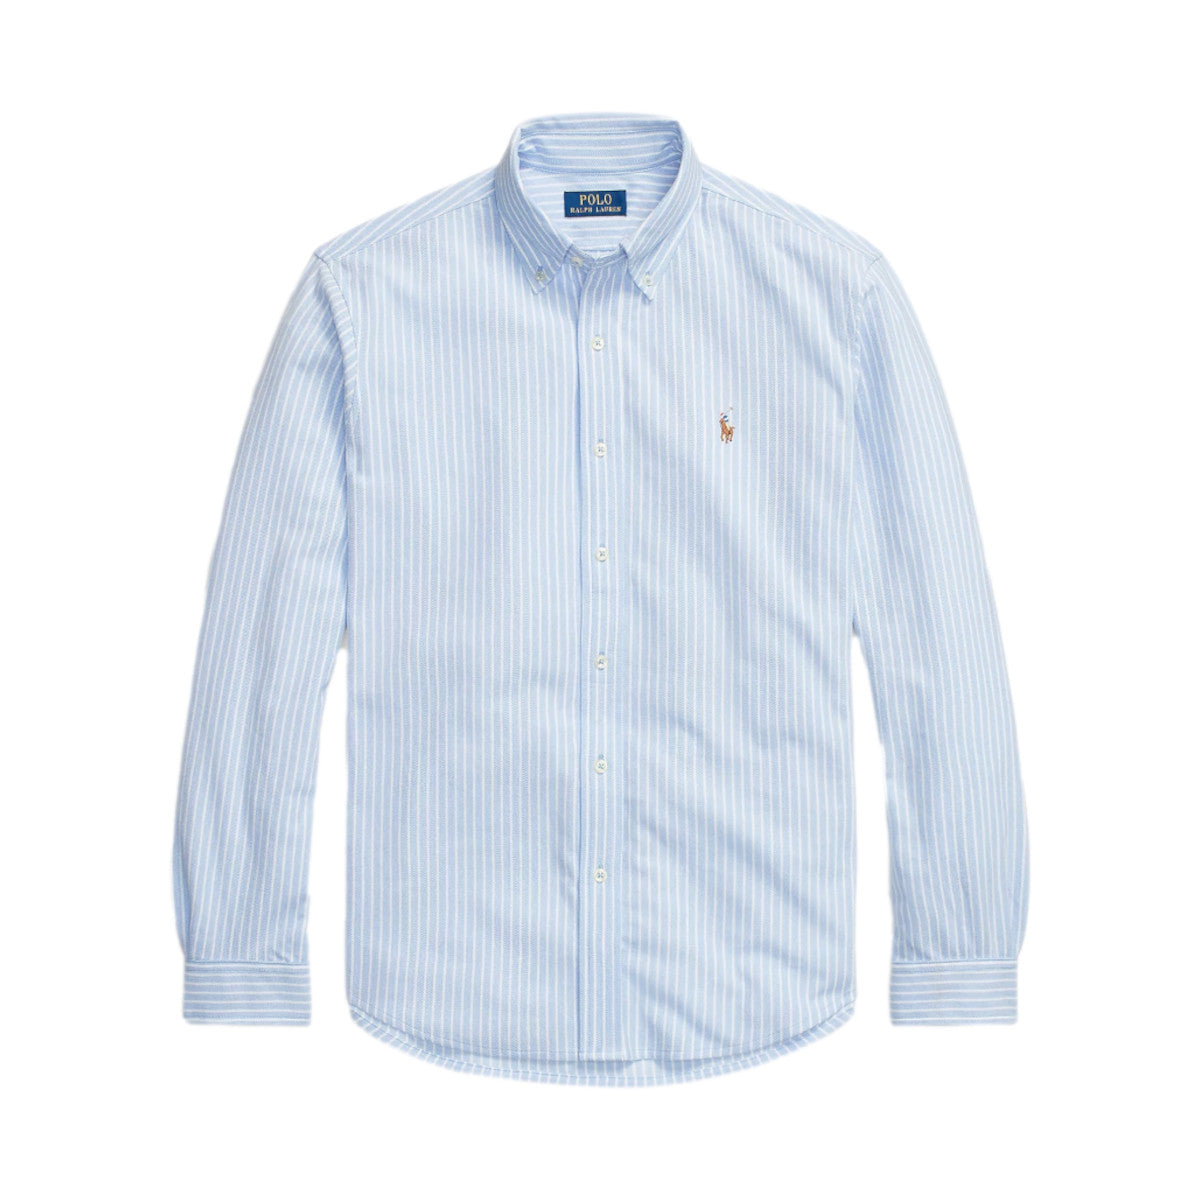 Polo Ralph Lauren LS Mesh Oxford Sport Shirt 002 Dress Shirt Blue/White